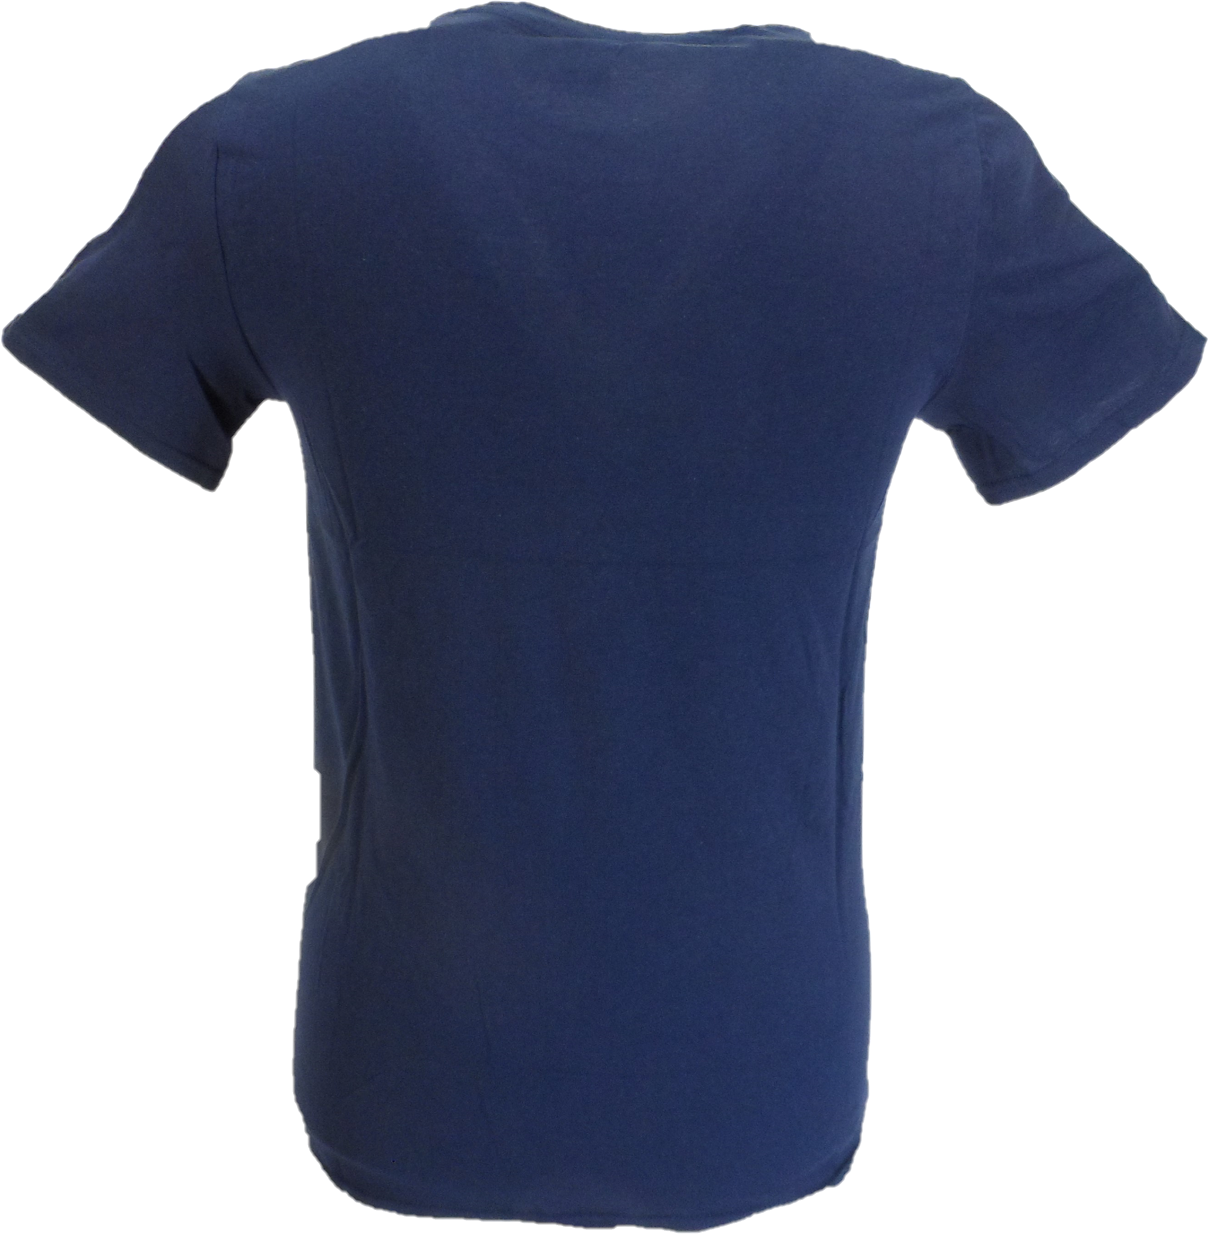 T-shirt Oasis bleu marine sous licence officielle pour homme, quelle est l'histoire